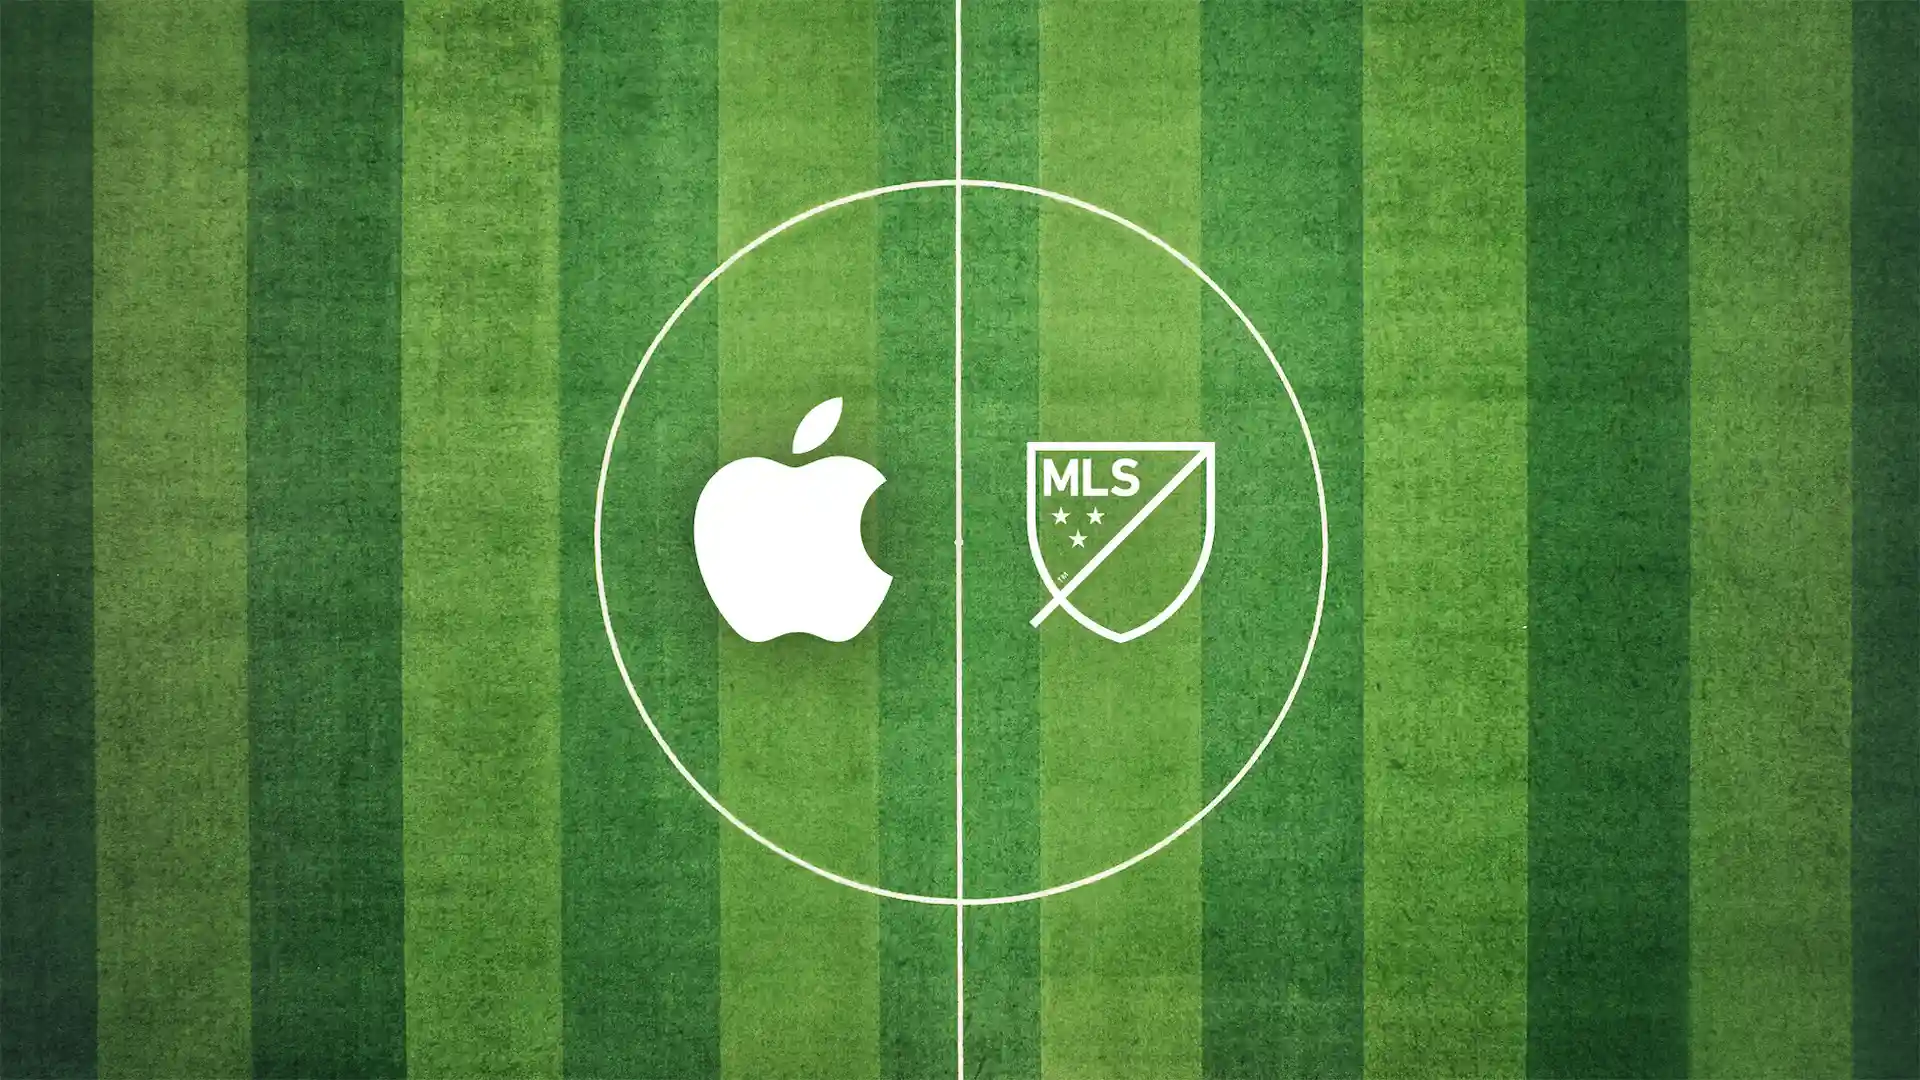 Apple TV Plus sale a competir con ESPN y transmitirá partidos de fútbol online